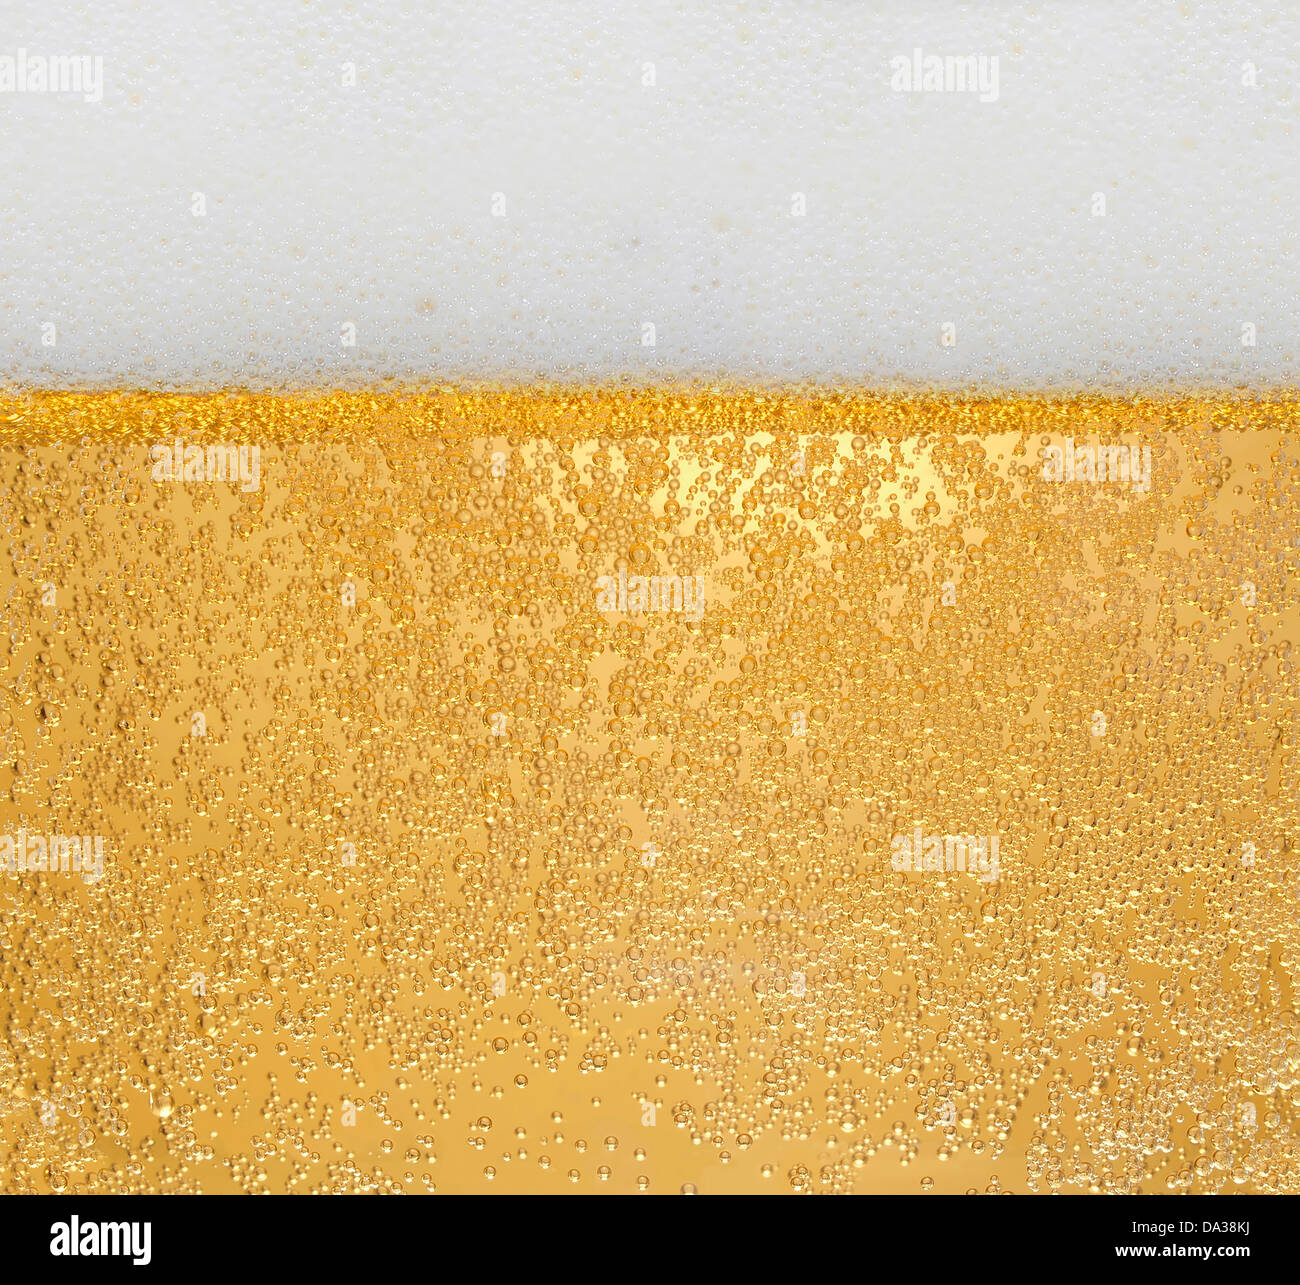 Beer - light golden beer in a glass, texture Stock Photo